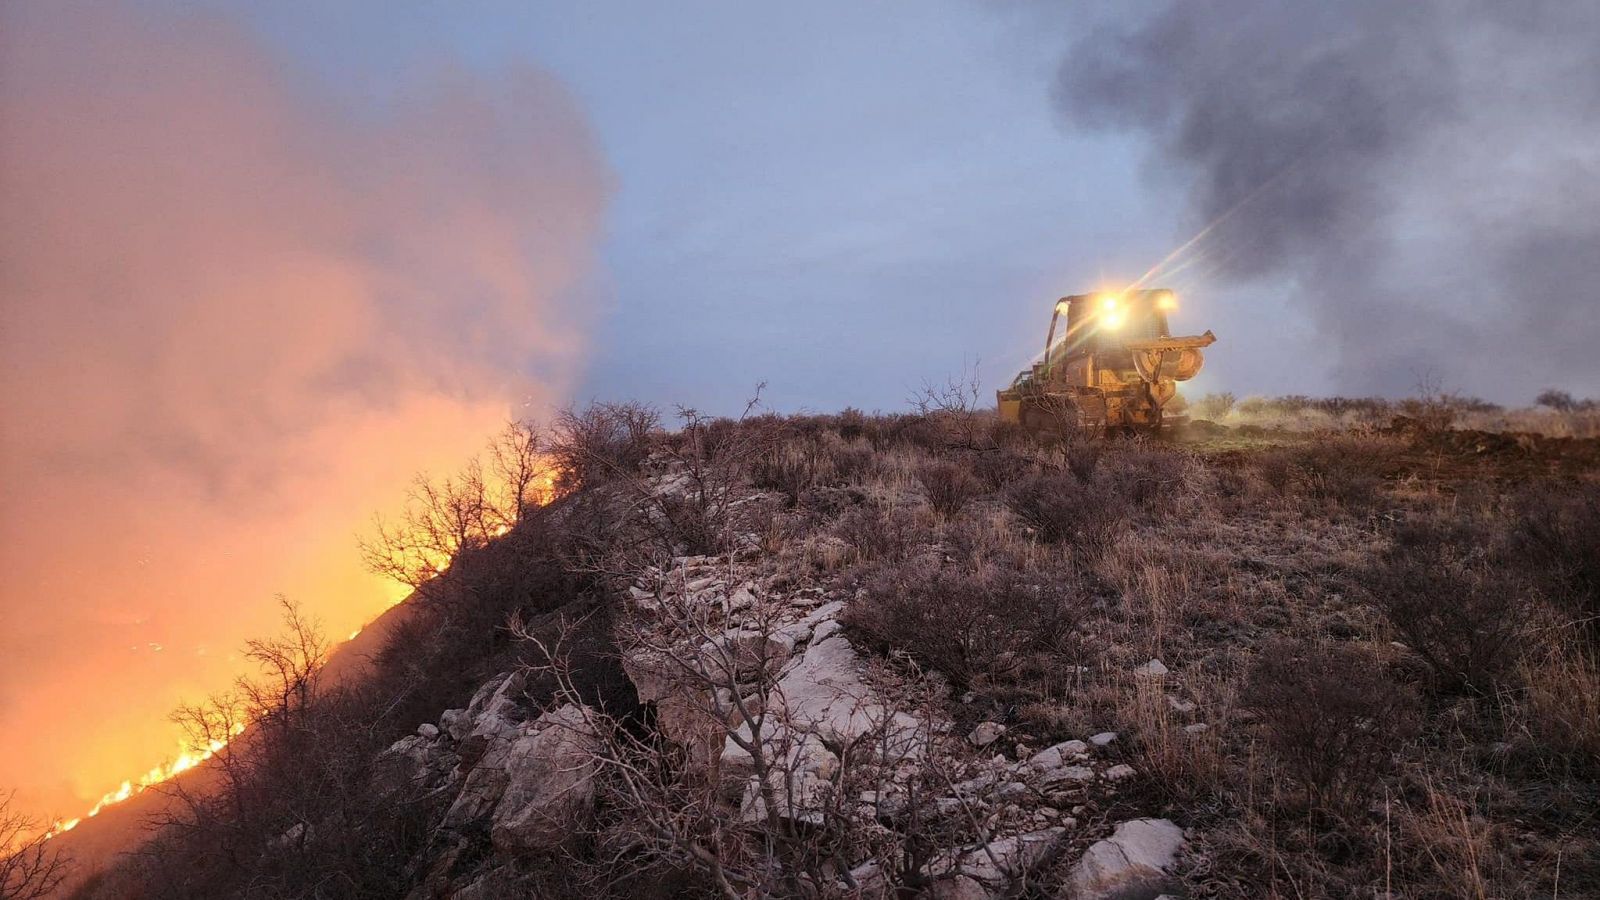 El incendio que sacude el estado de Texas arrasa más de 400.000 hectáreas